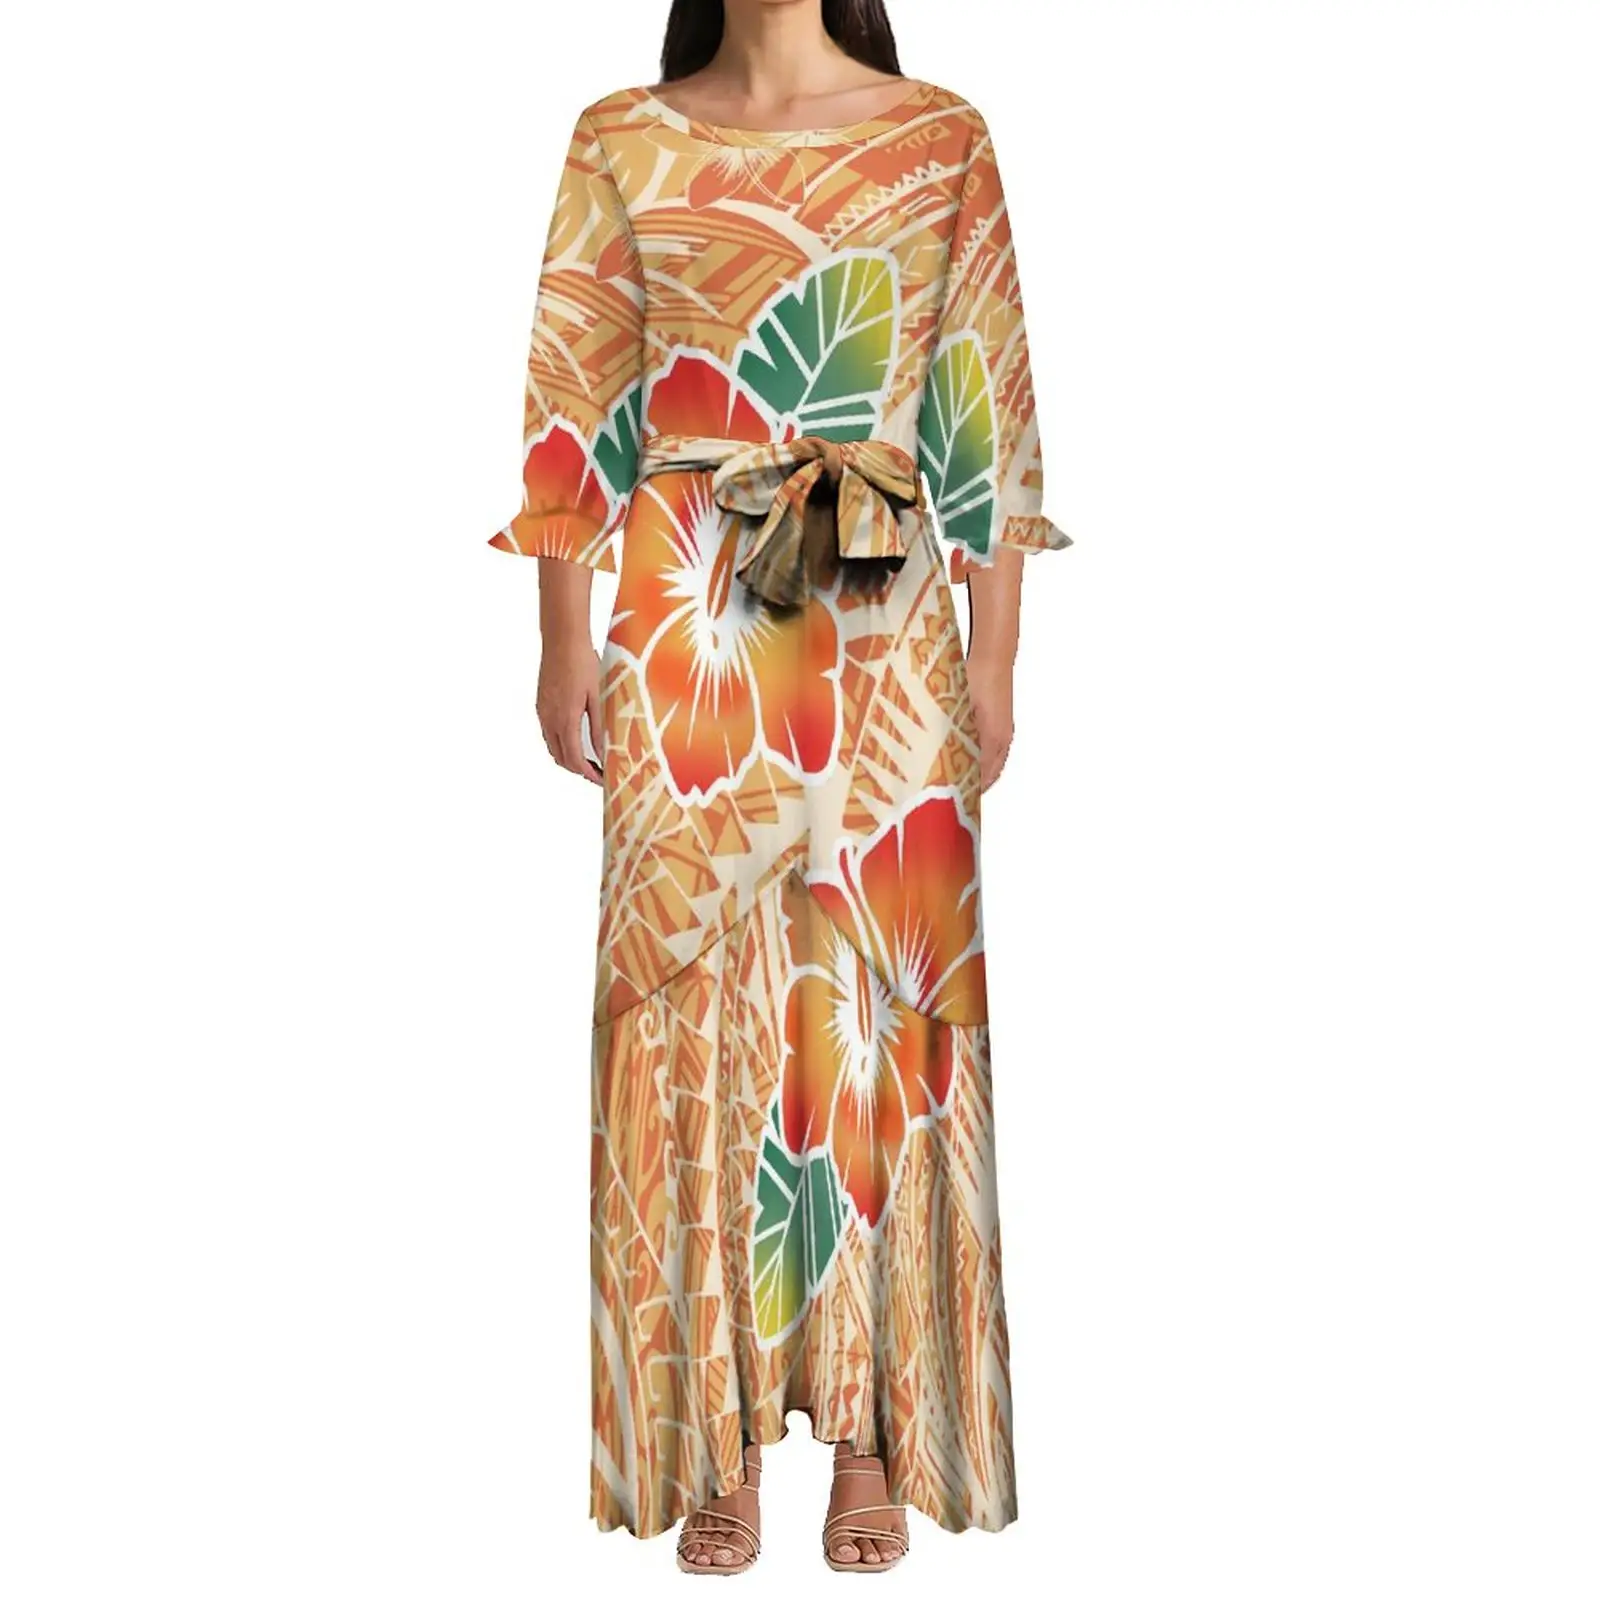 Robe de Style ethnique pour femmes, tenue de soirée élégante à lacets, queue de poisson, polynésienne, Hibiscus, impression par Sublimation